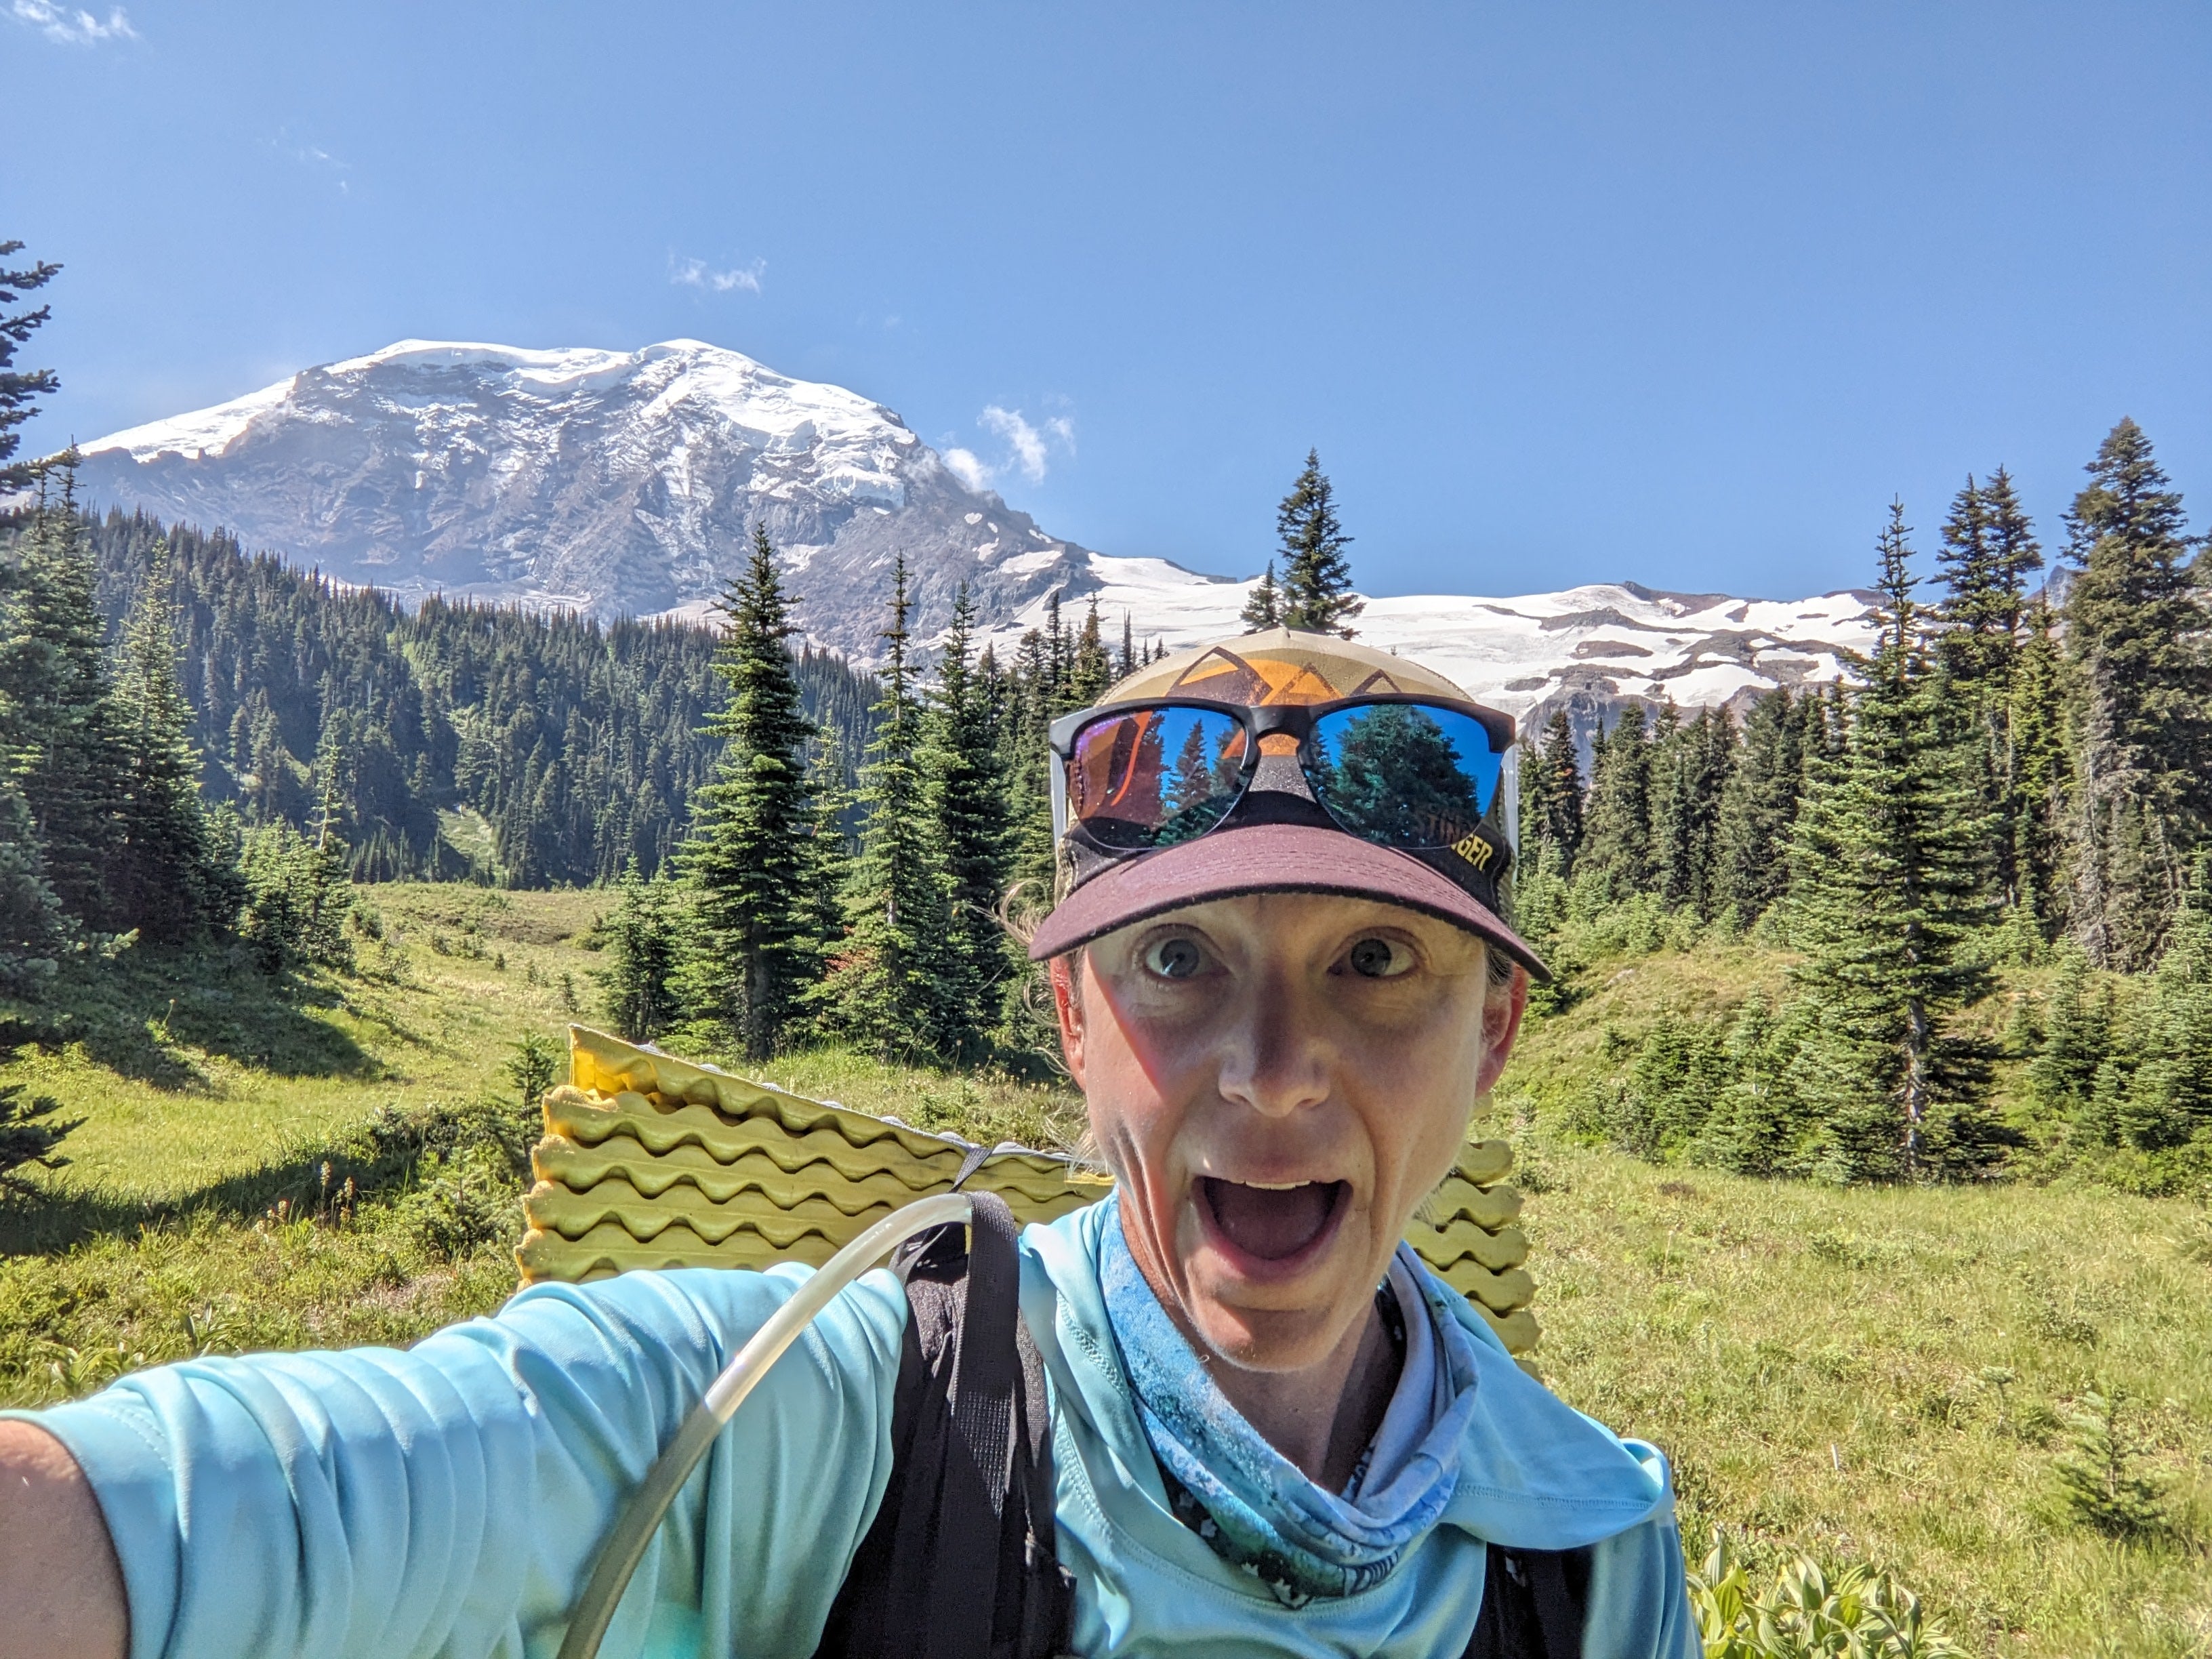 The Wonderland Trail - An Impromptu Adventure Around Mt. Rainier by Heather Hoechst